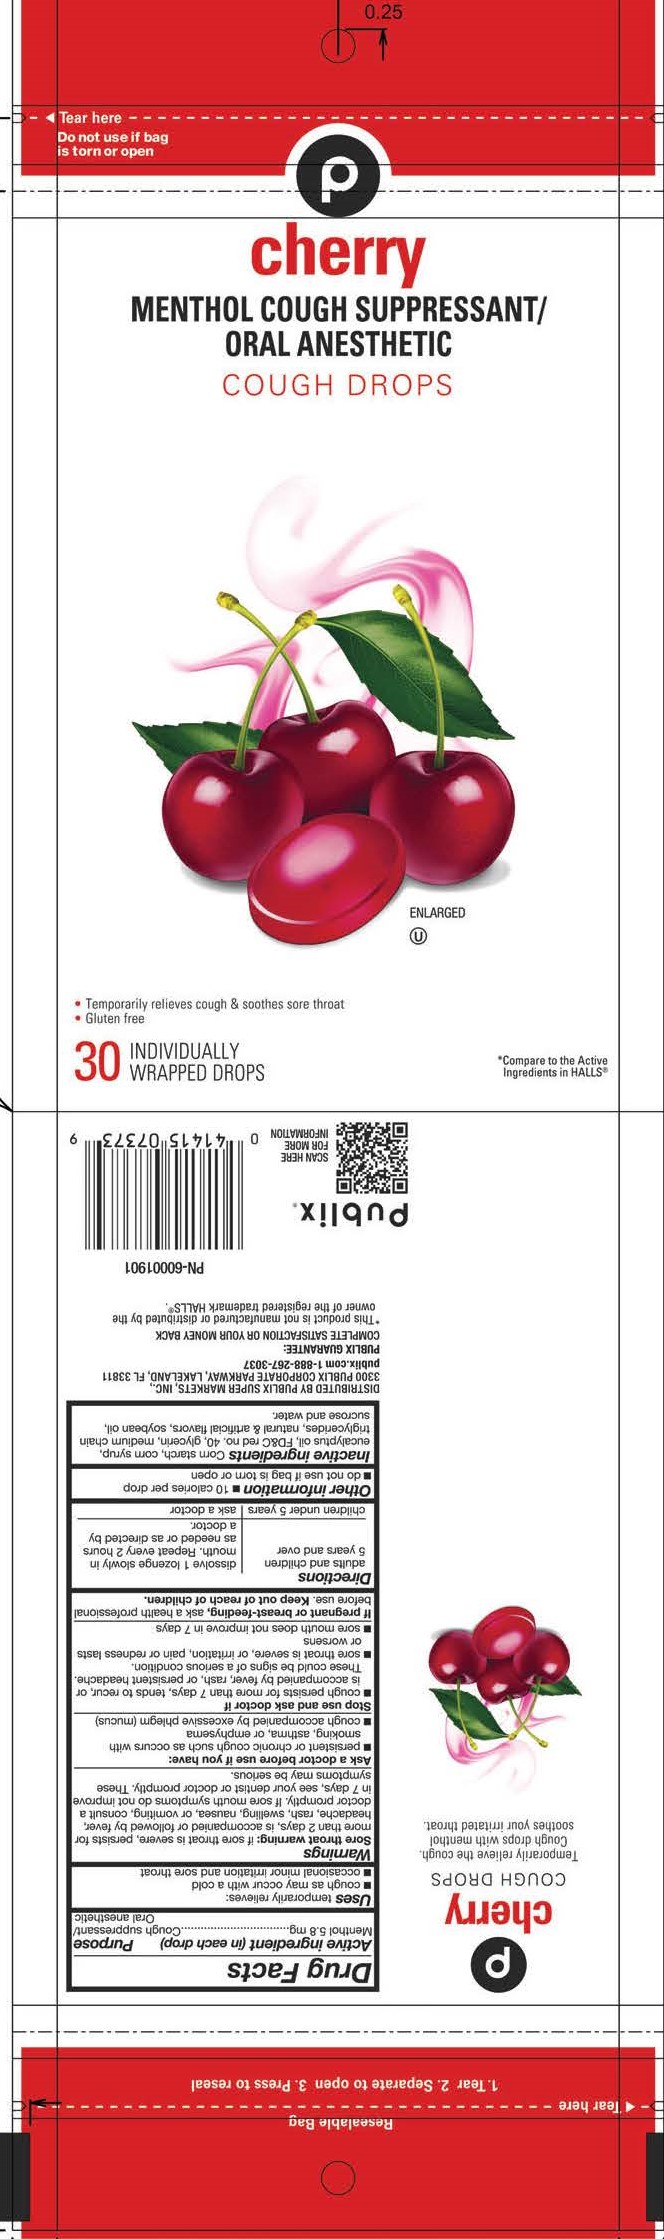 Publix Cherry 30ct Cough Drops